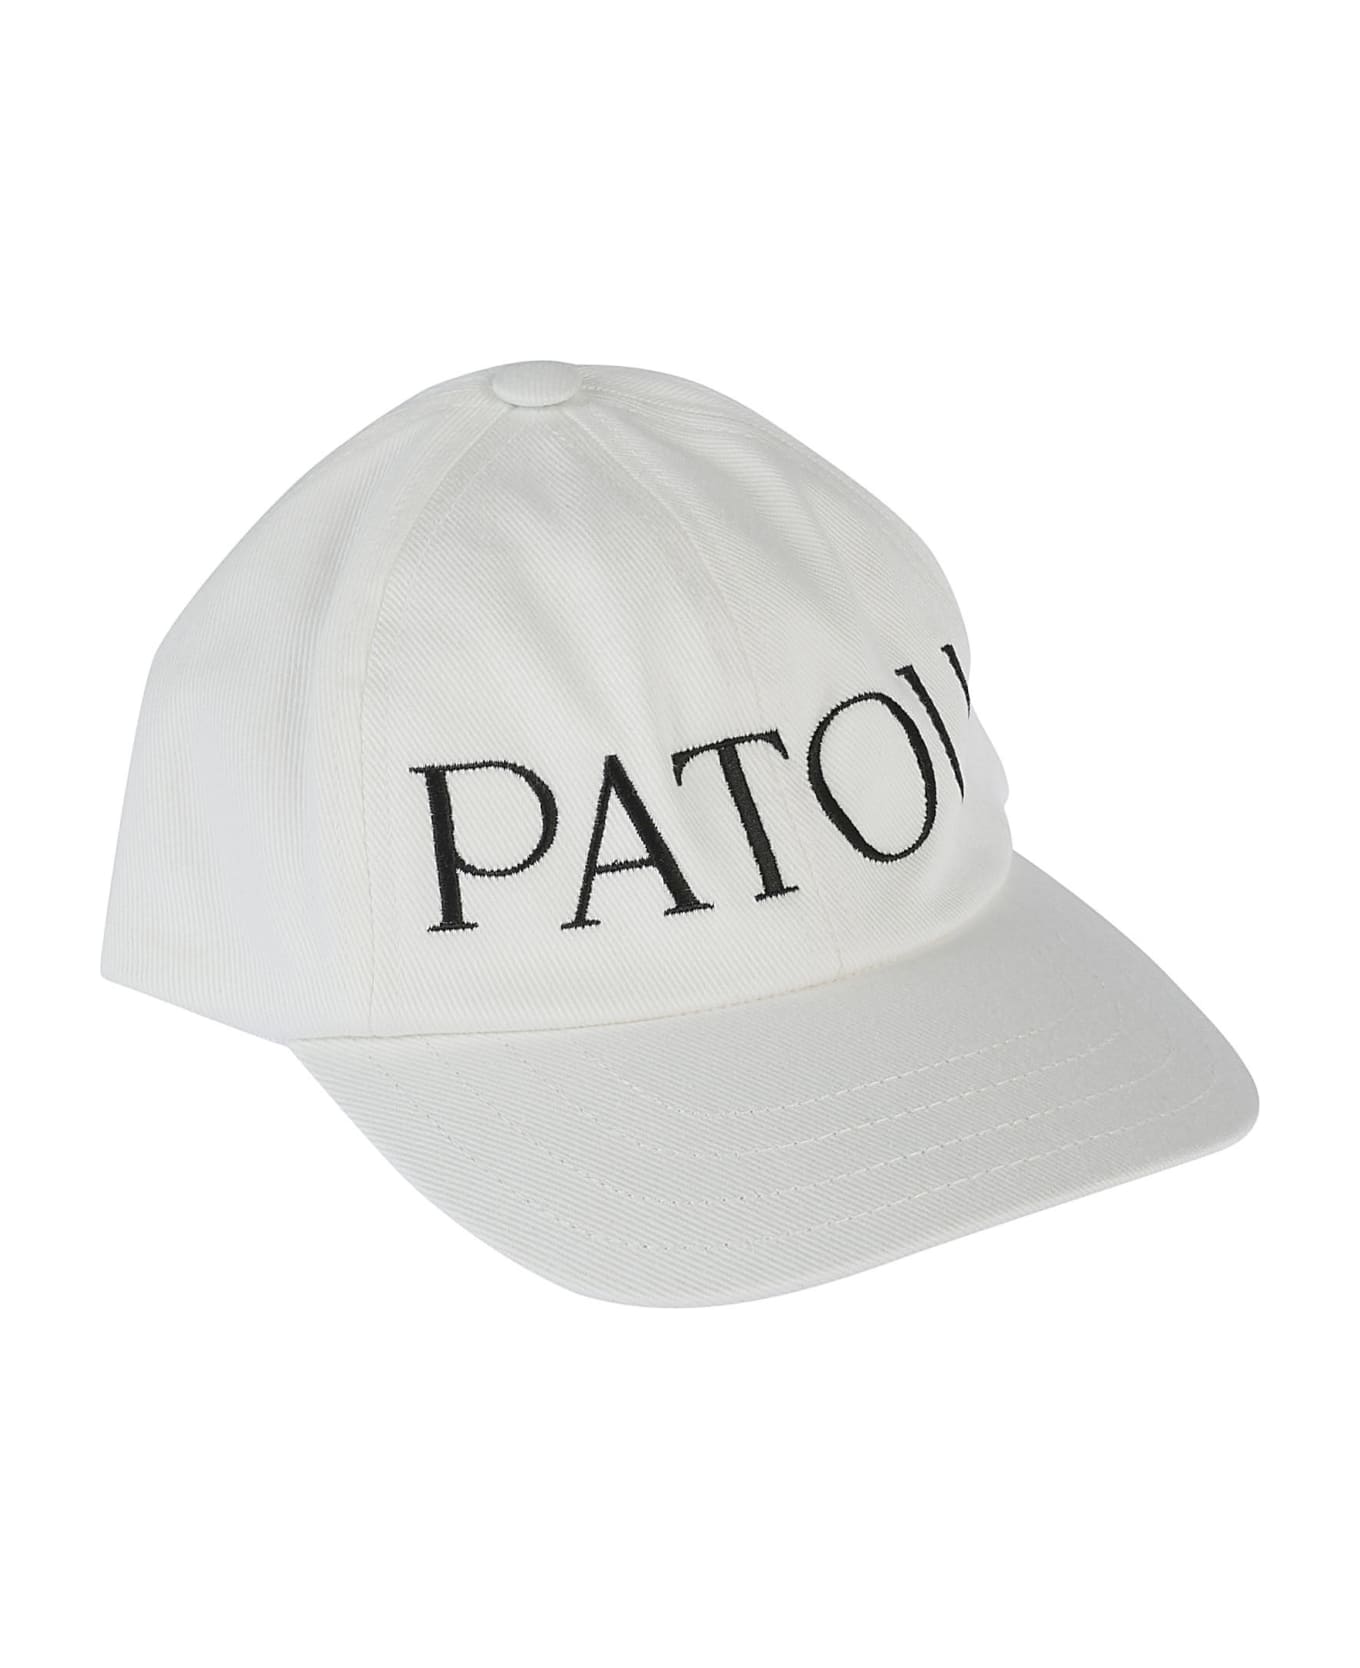 Patou Logo Baseball Cap - Cream